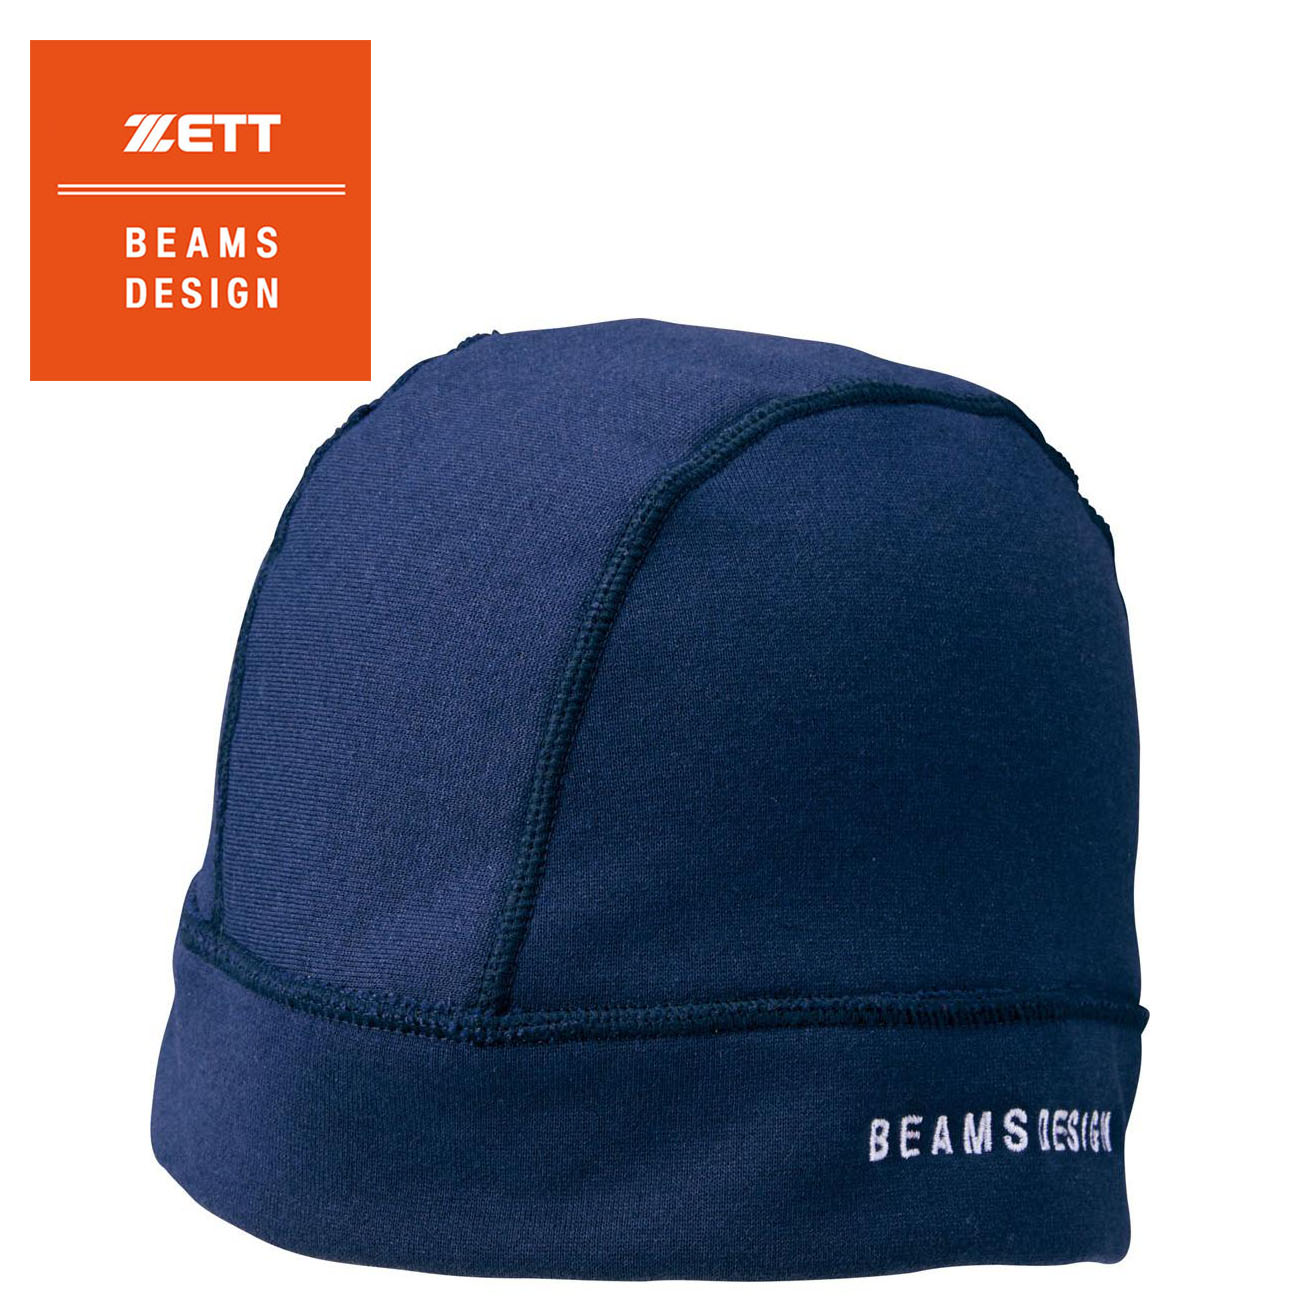 ZETT BEAMS DESIGN ビーニーキャップ 日本製